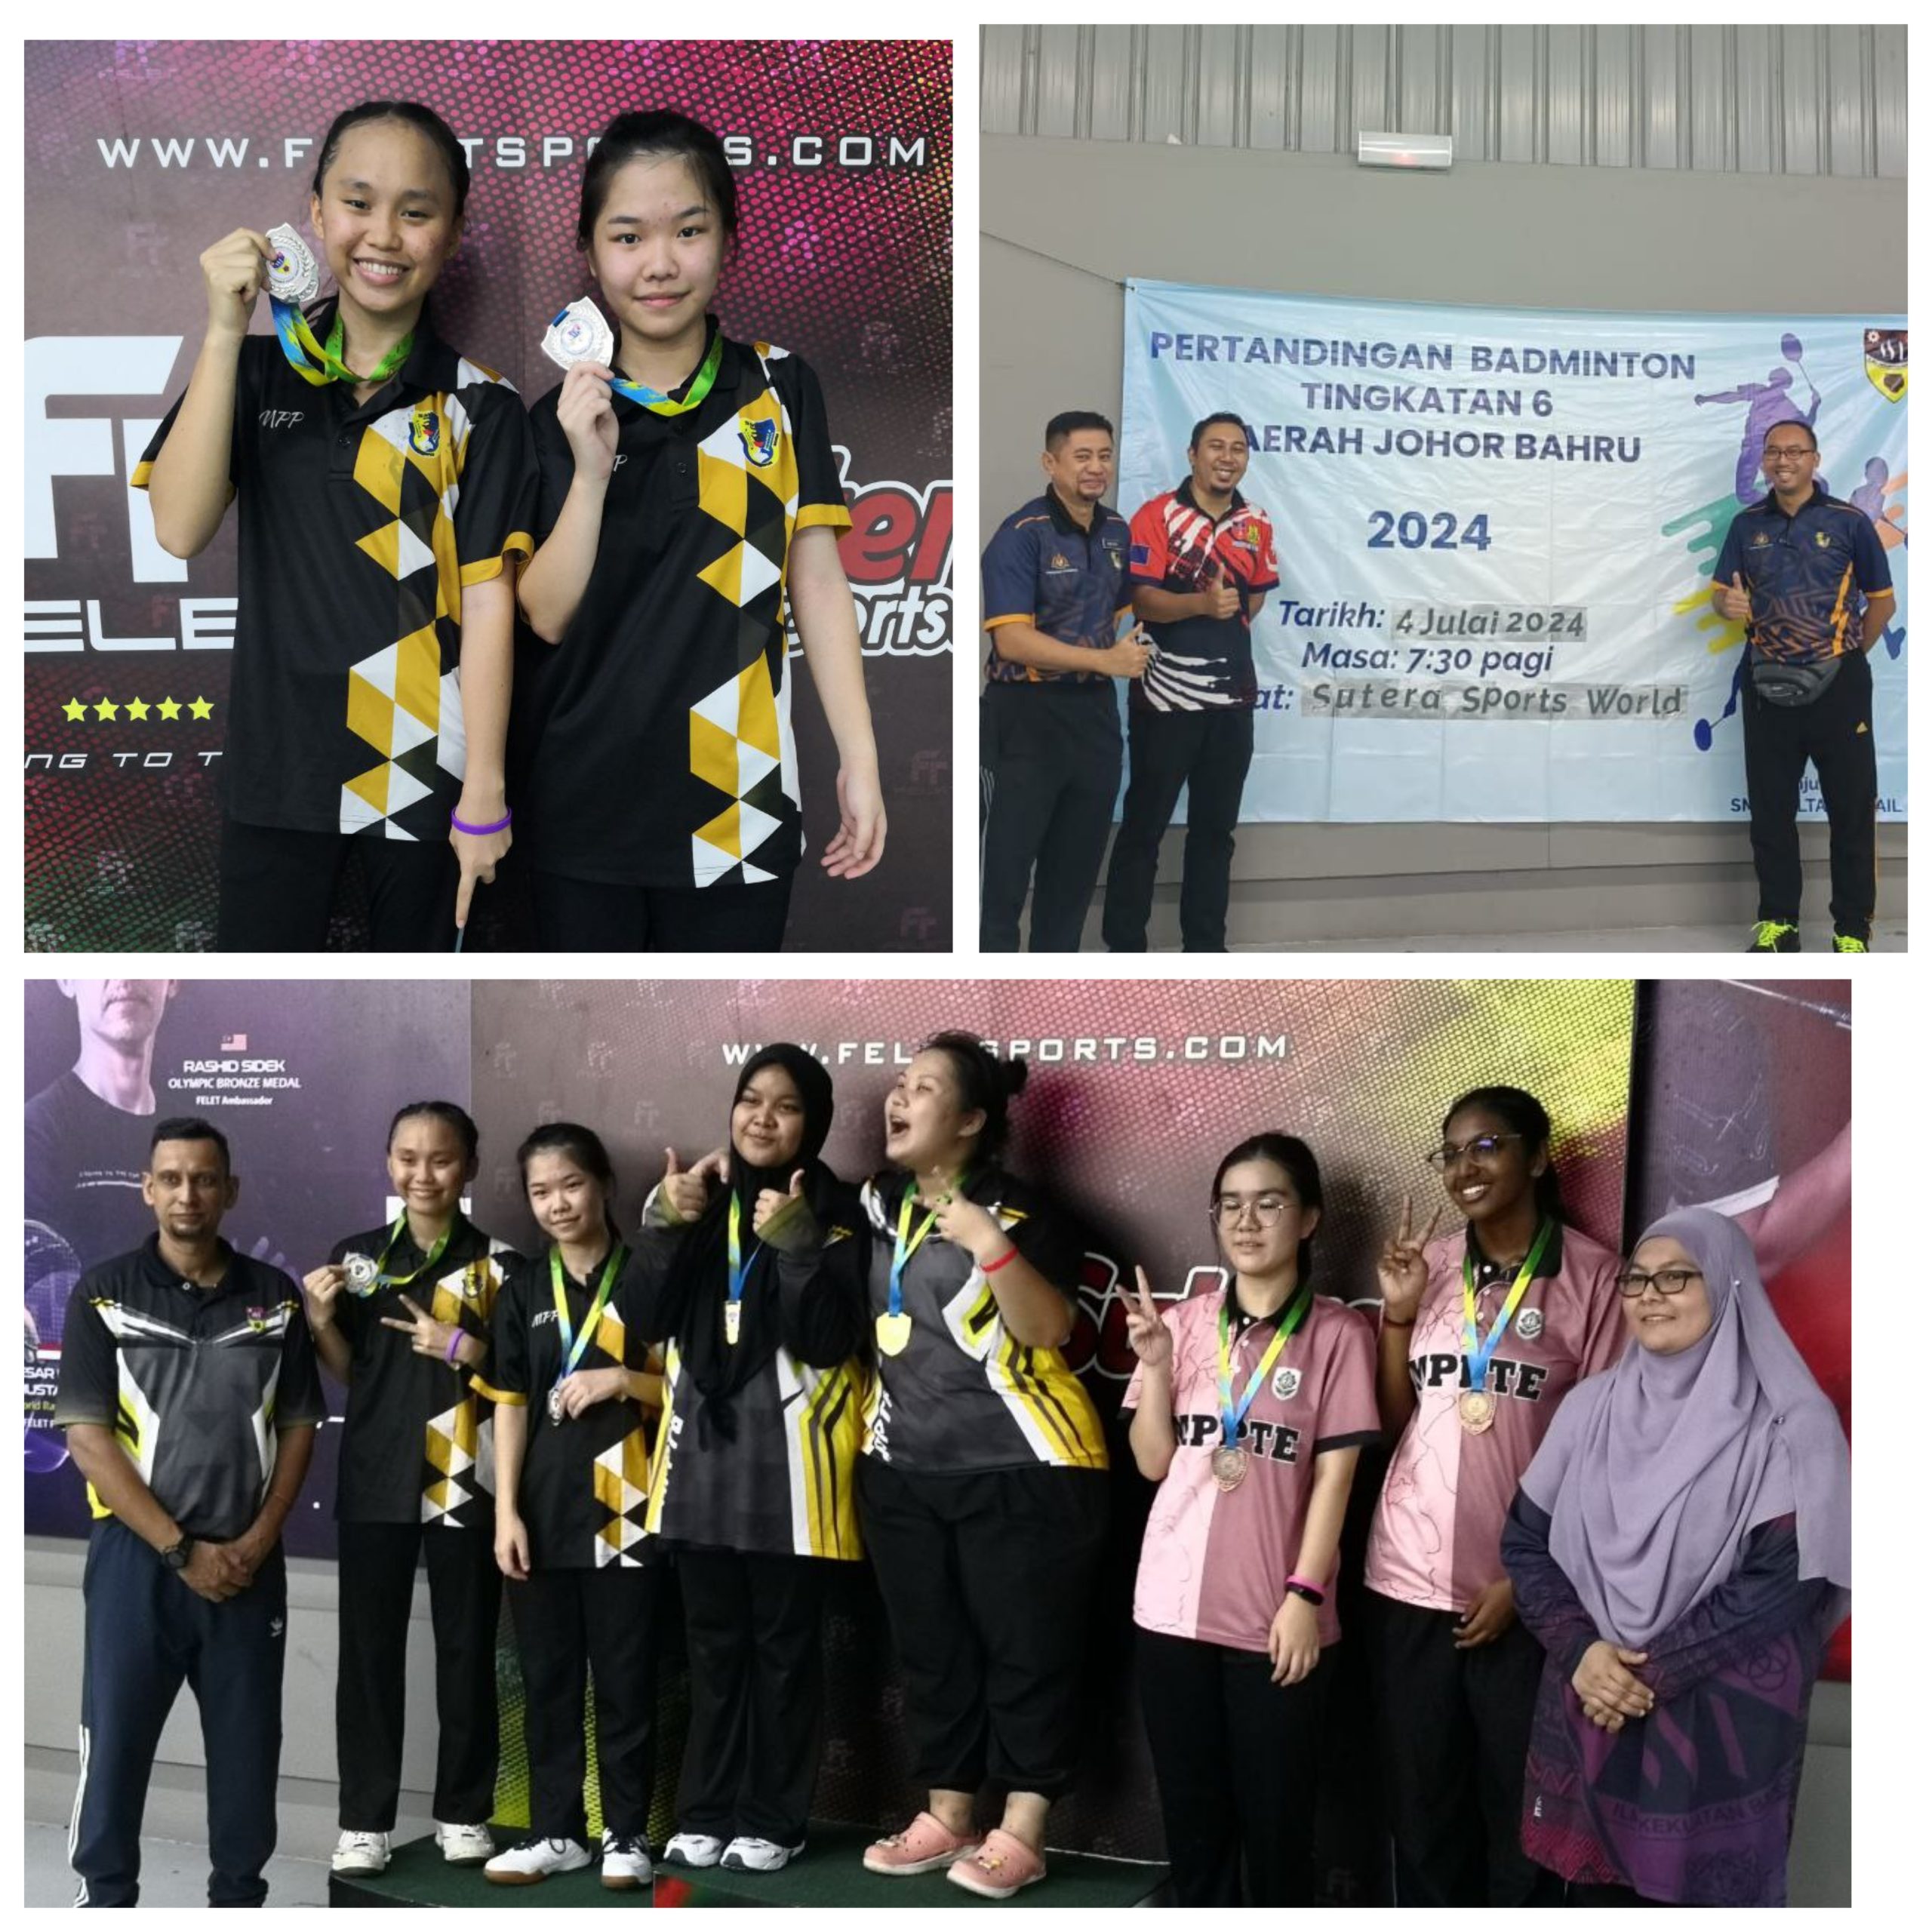 You are currently viewing Pertandingan Badminton Tingkatan 6 Daerah Johor Bahru 2024